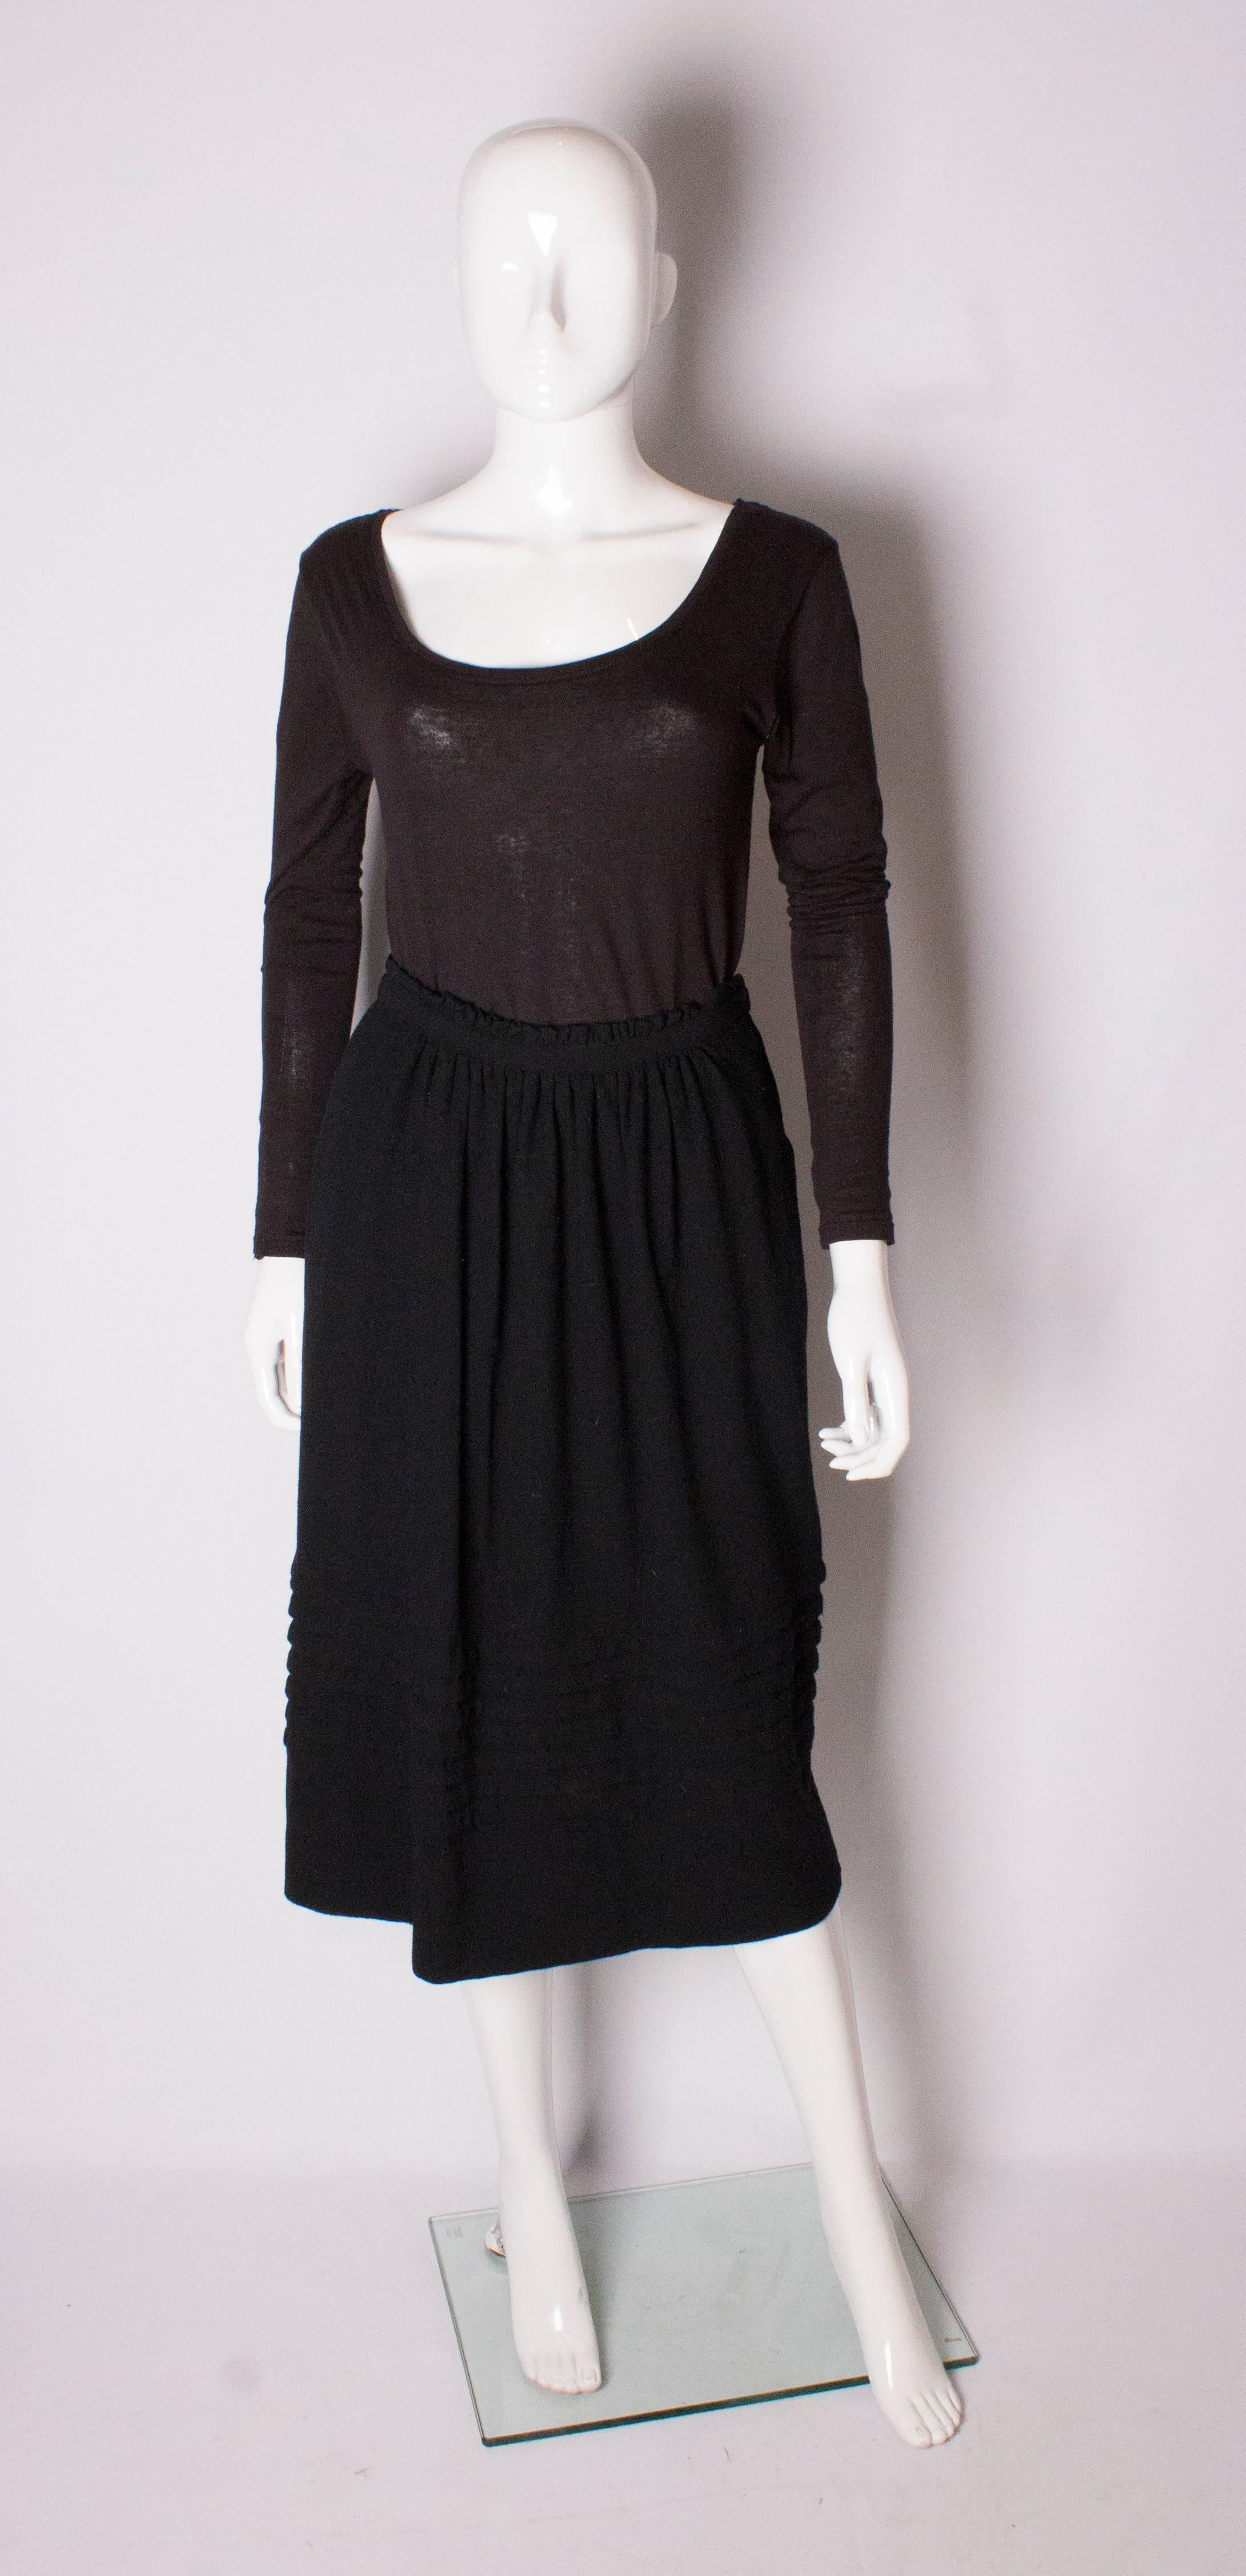 Un vintage chic et chaleureux de Christian Dior. La jupe en laine noire est entièrement doublée, avec des fronces à la taille et des rangées de plis près de l'ourlet. La jupe a une fermeture éclair sur le côté gauche et des poches.